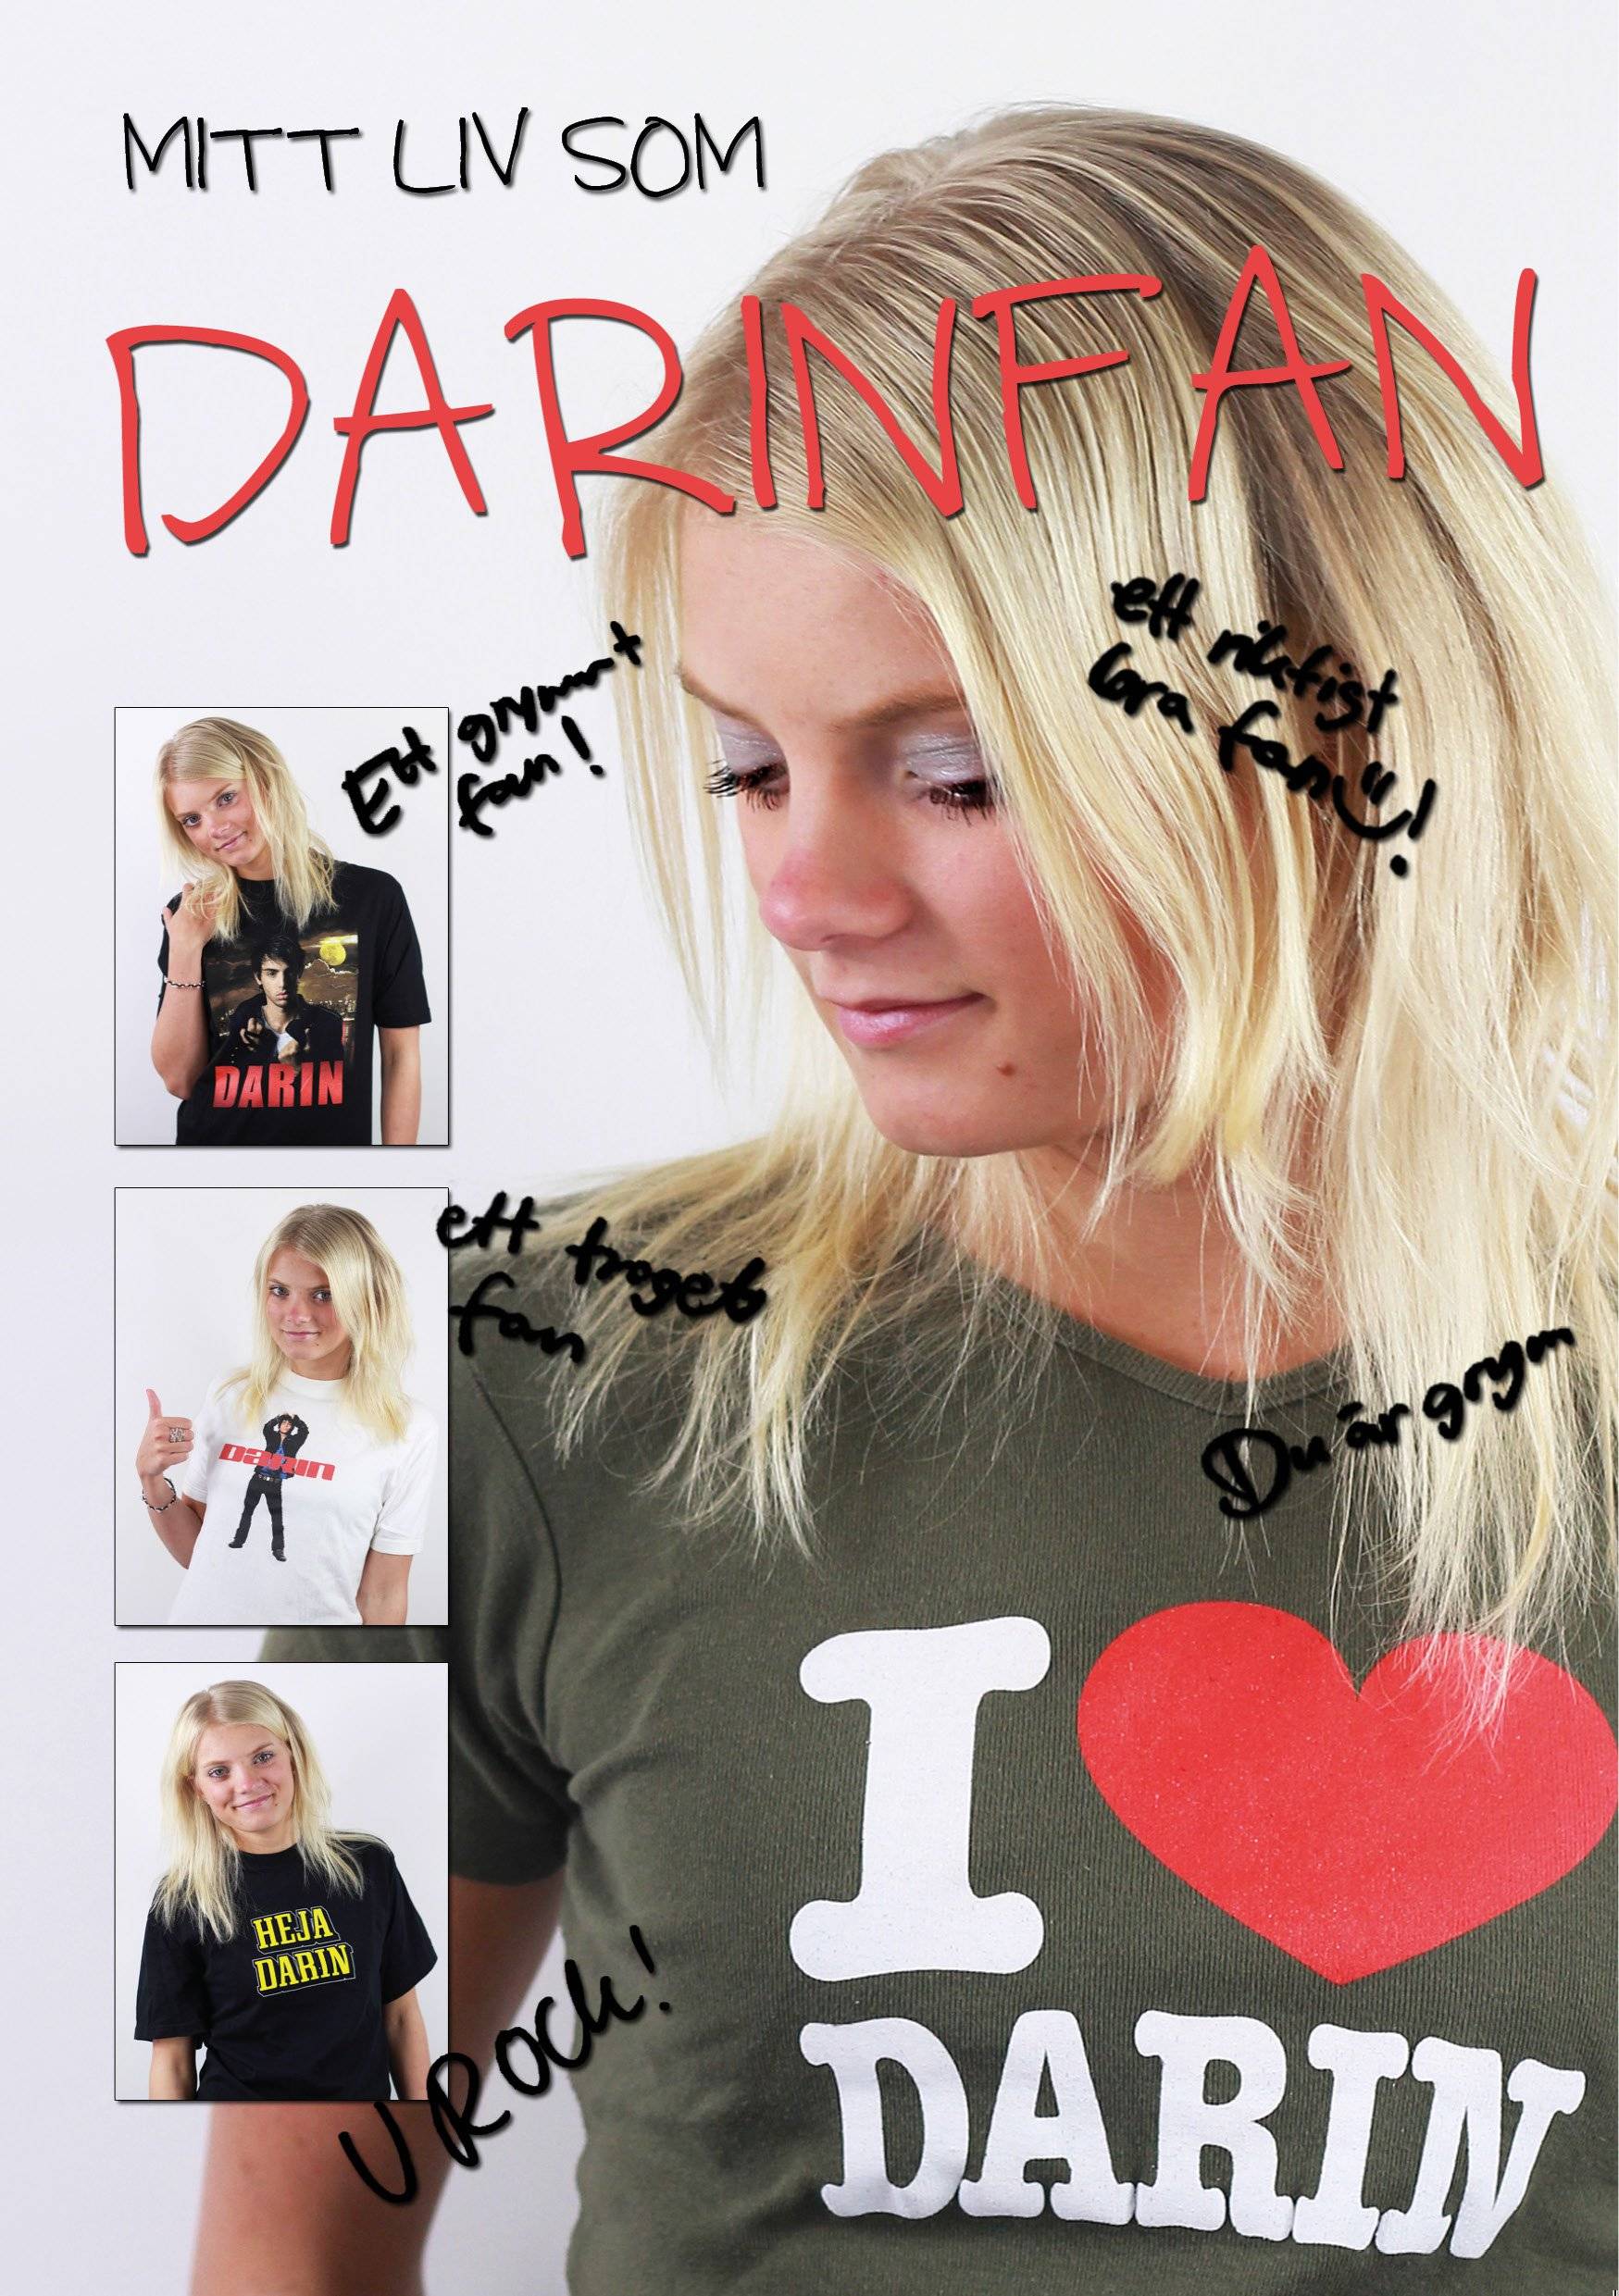 Mitt liv som Darinfan